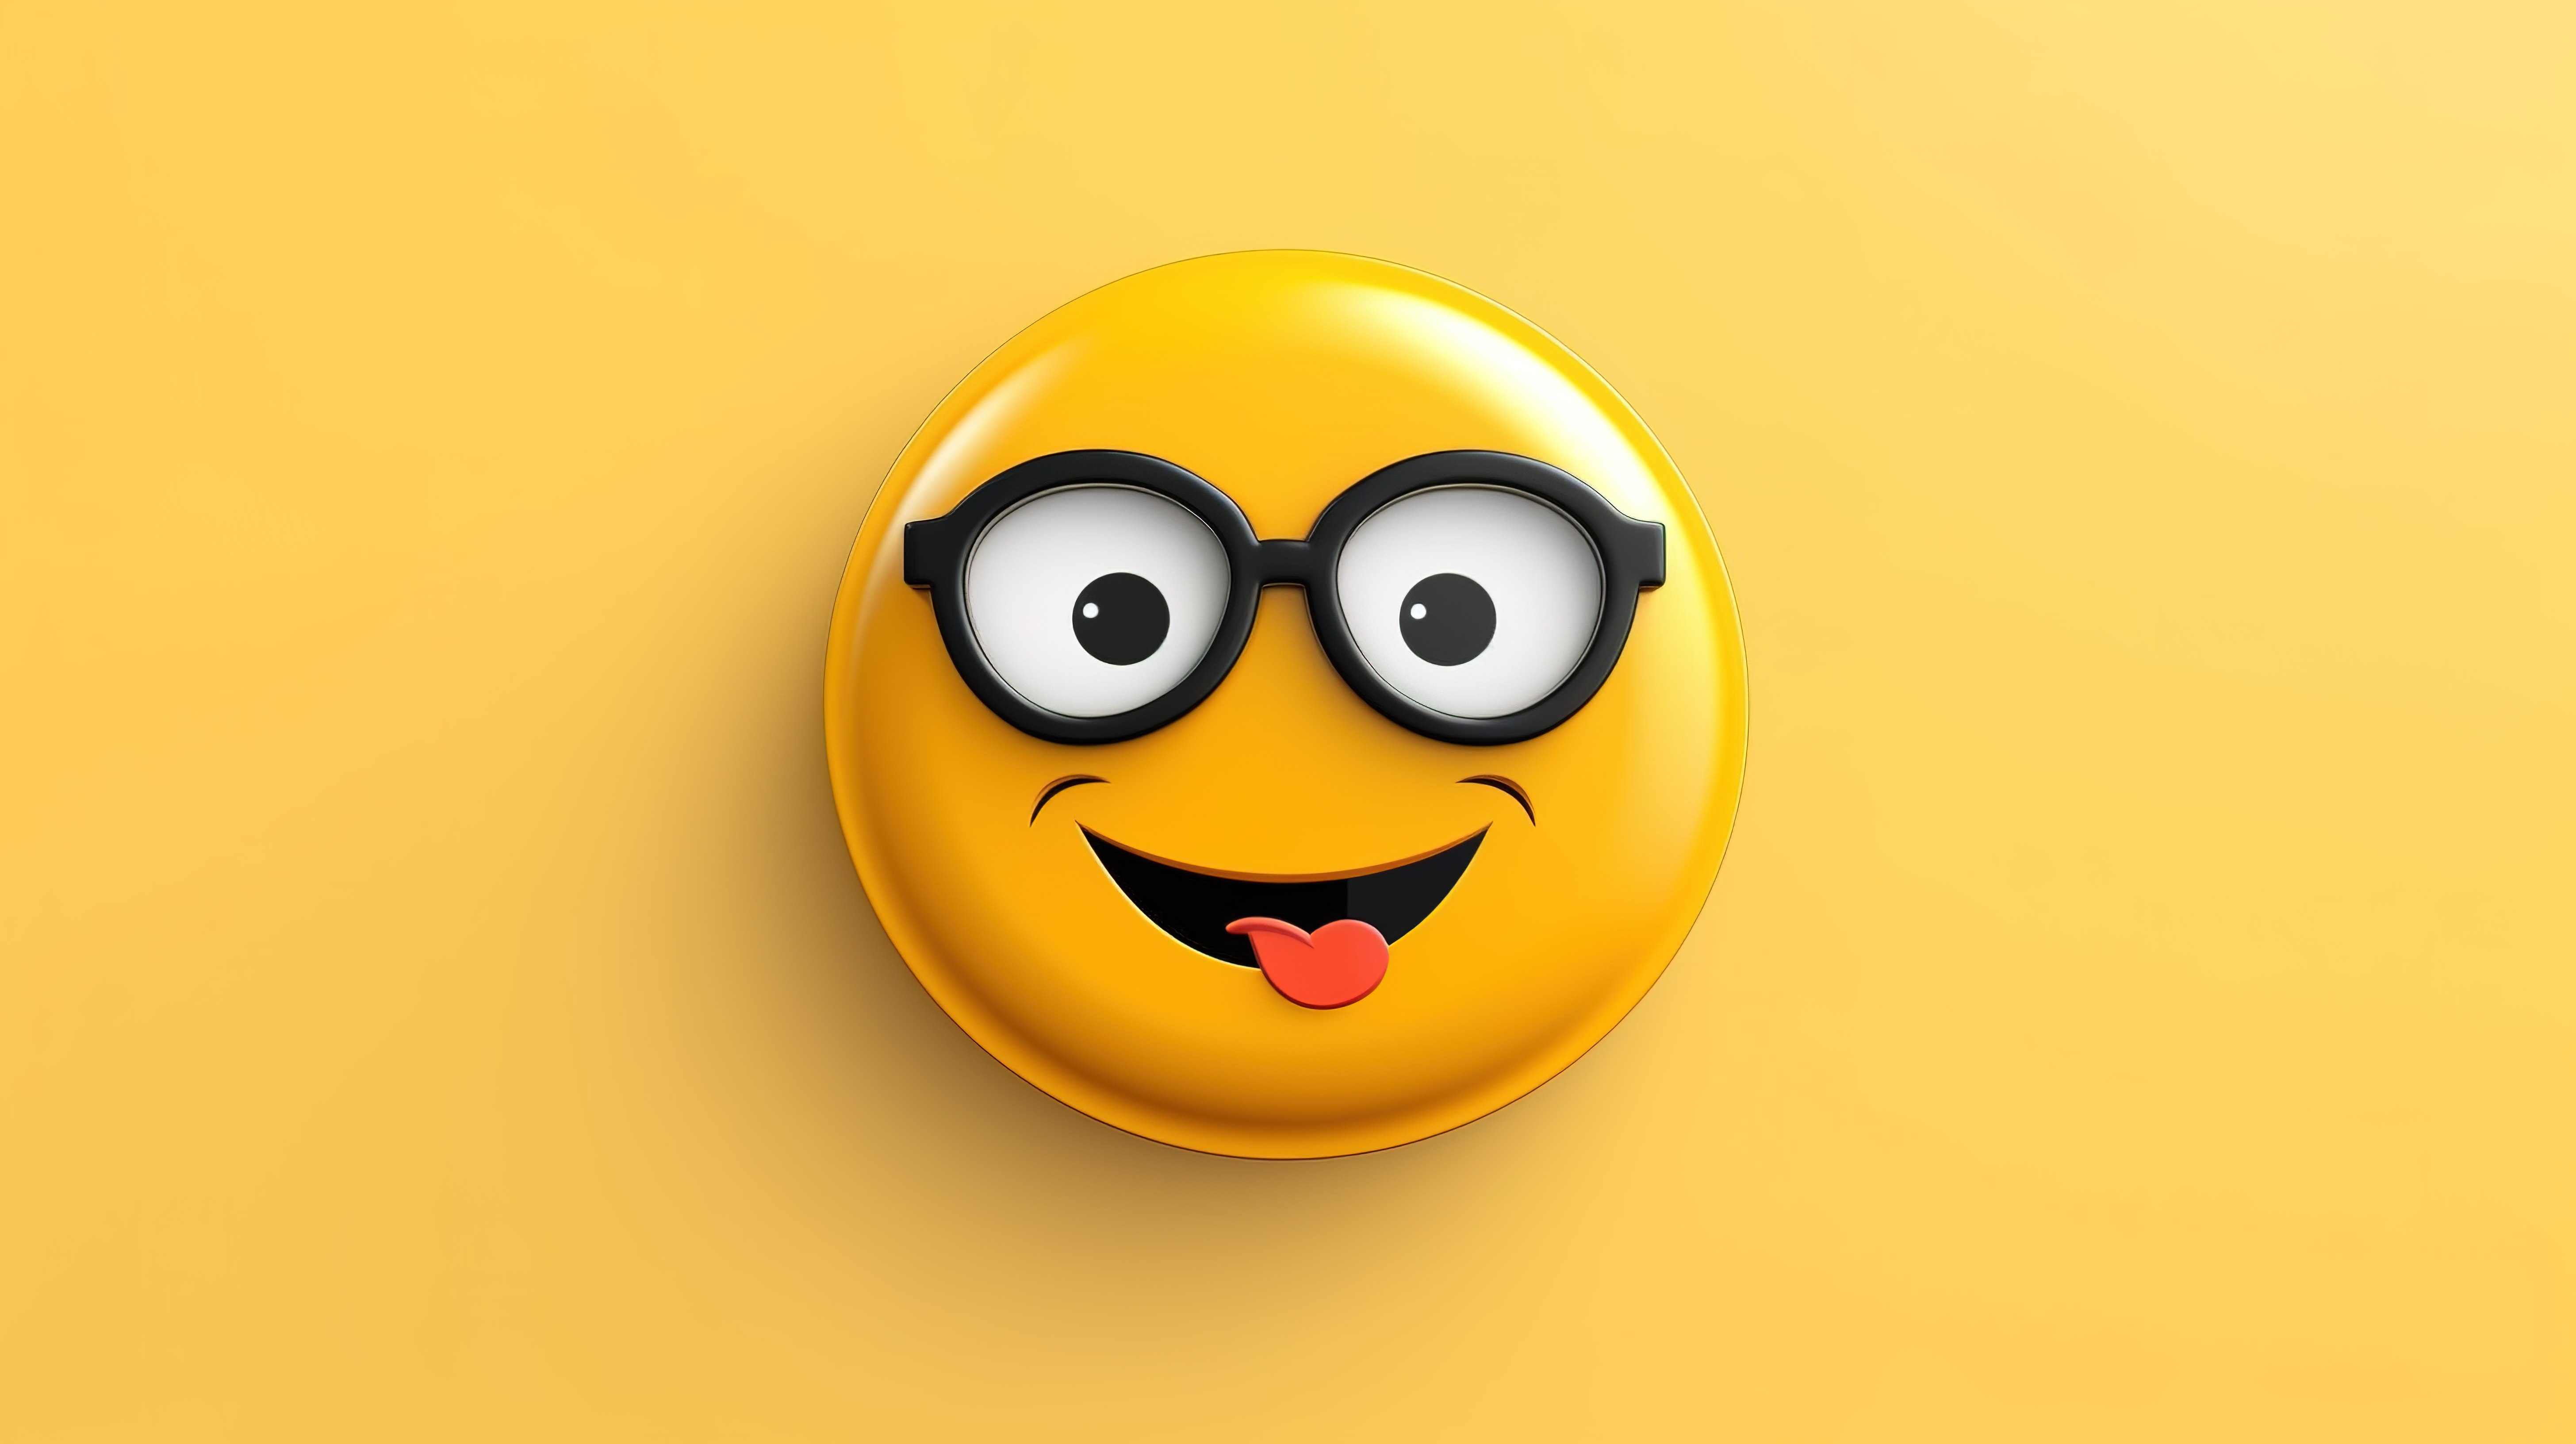 圆形按钮形状轮廓上戴着眼镜的书呆子笑脸图释的 3D 图标图片